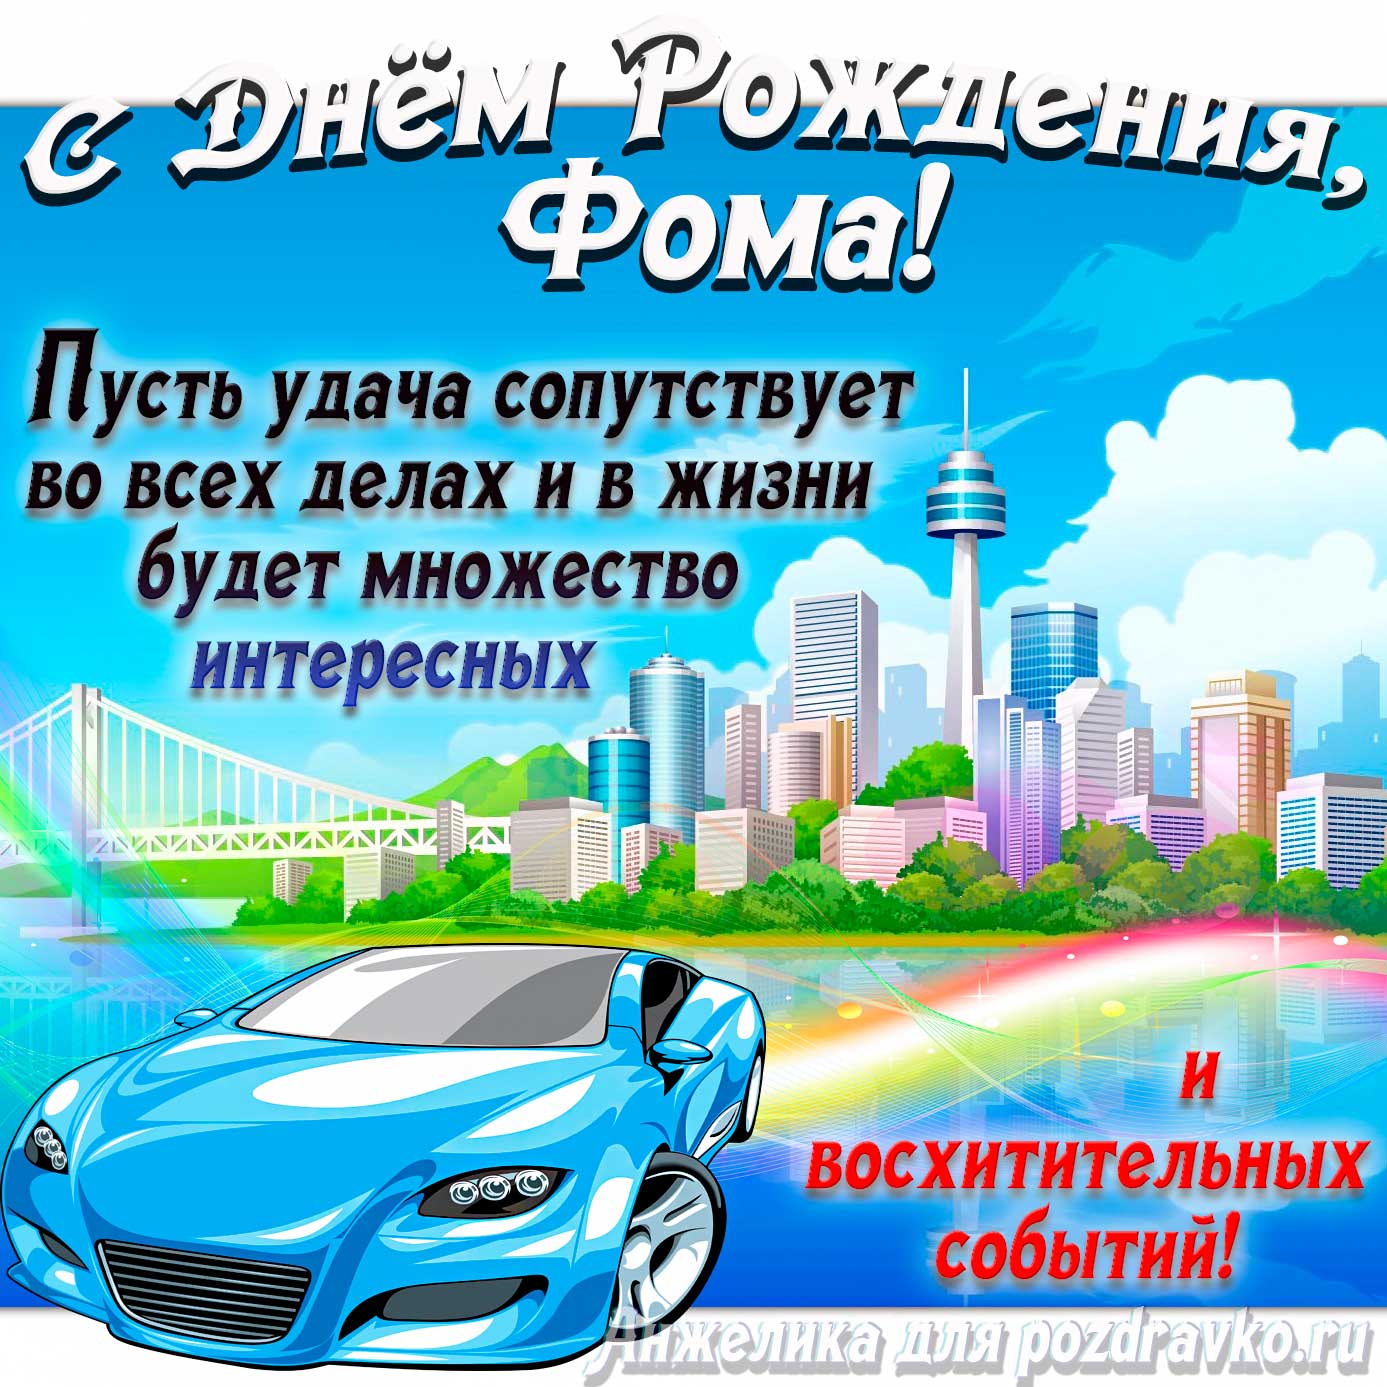 Открытка - с Днём Рождения Фома с голубой машиной и пожеланием. Скачать бесплатно или отправить картинку.